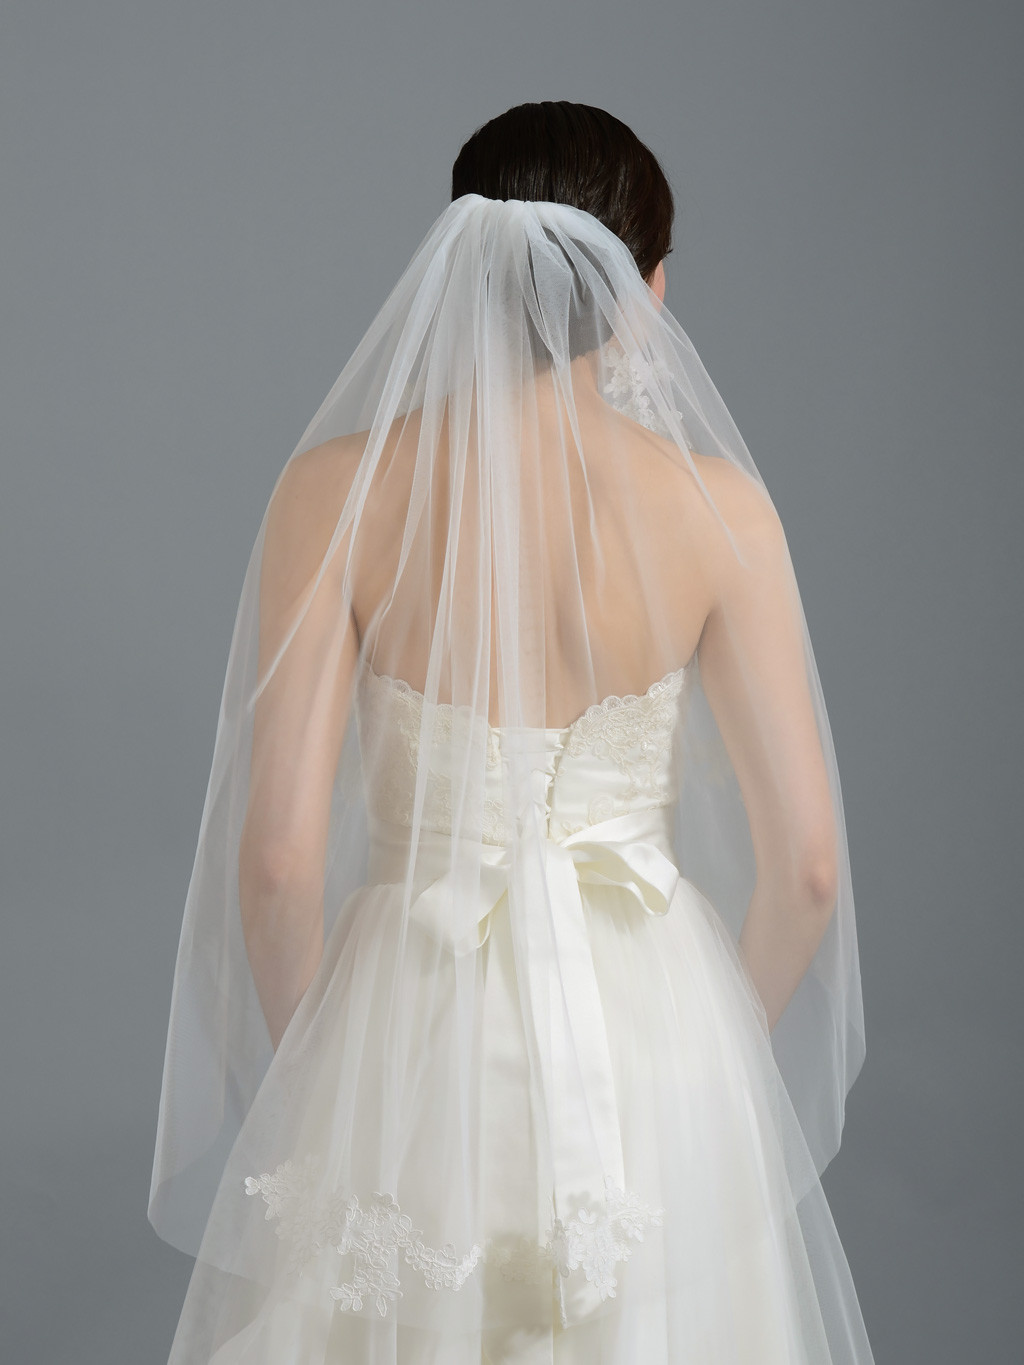 Ivory Wedding Veils For Sale
 Ivory elbow wedding veil V052n alencon lace V052n